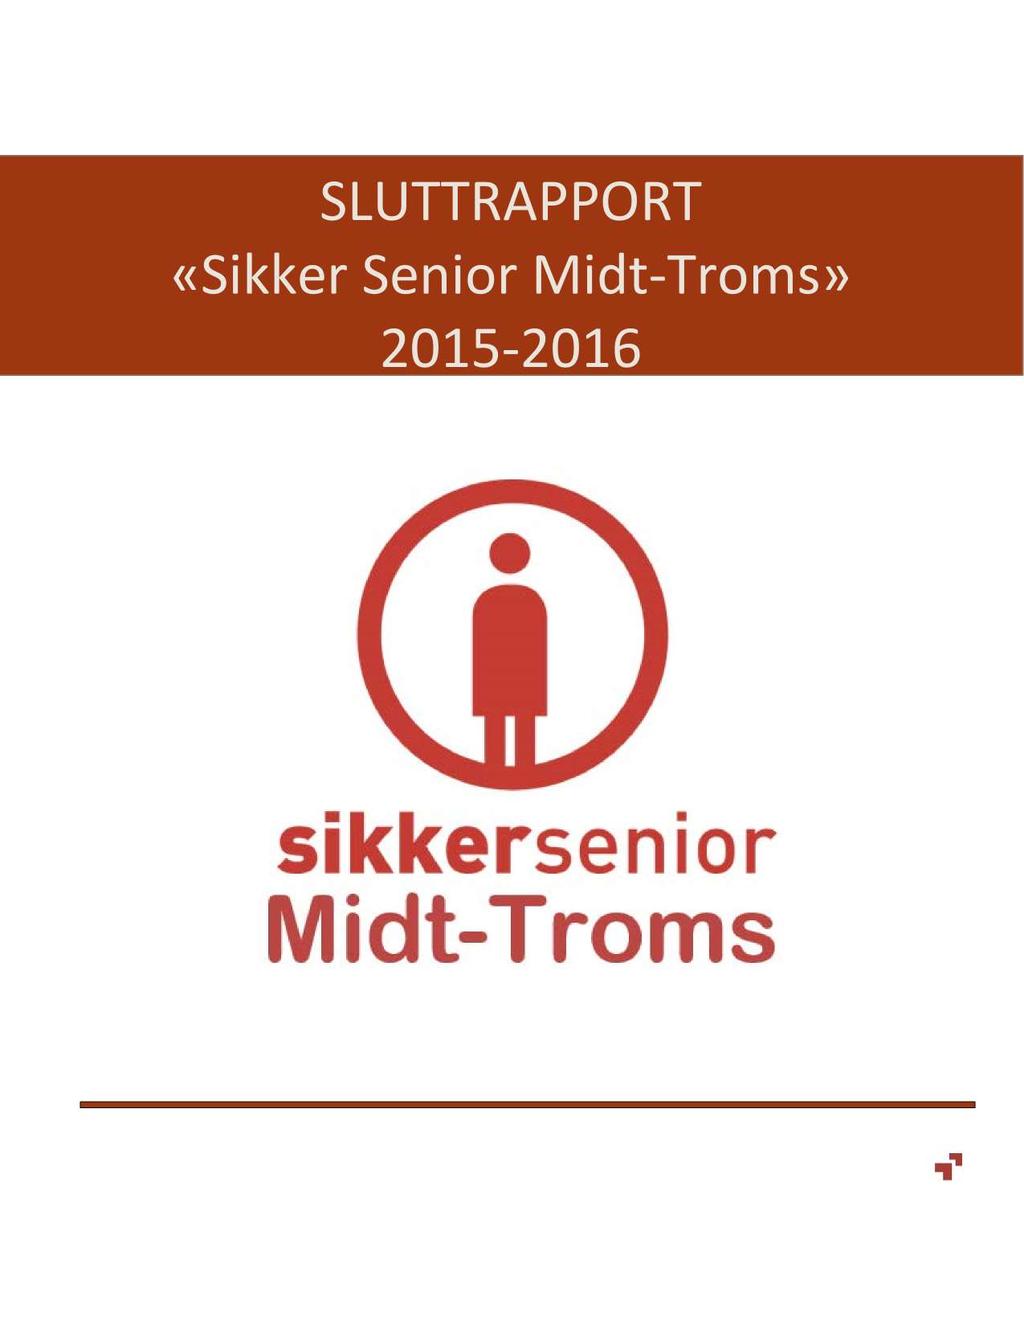 SLU TTR AP P O R T «Sikker Senior Midt - Troms»